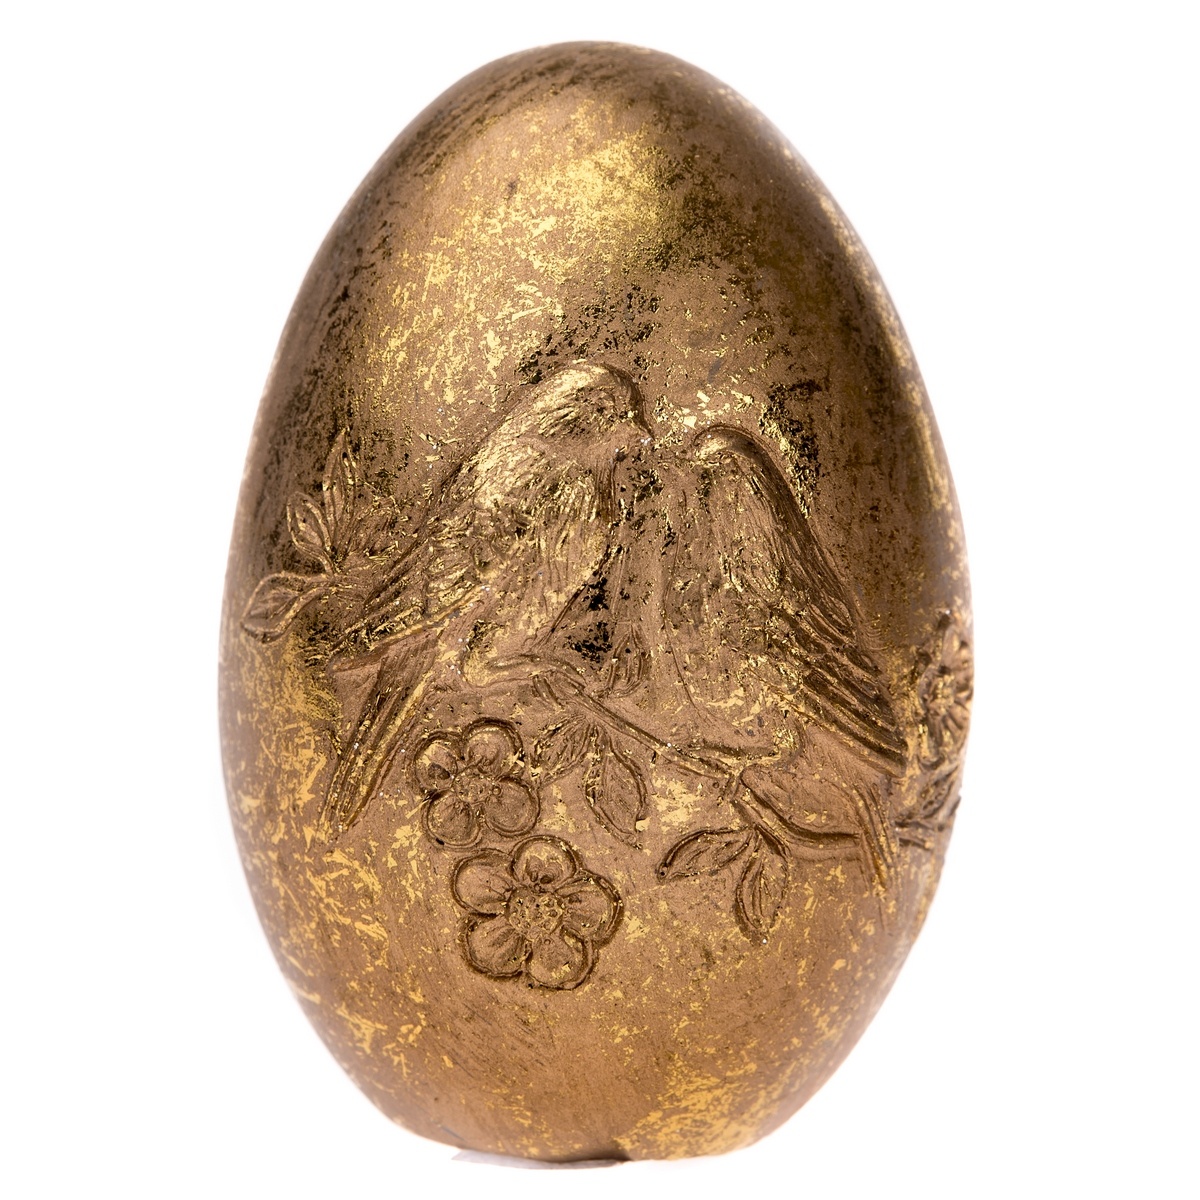 Fotografie Dekorační zlaté vajíčko s ptáčky, 6 x 10 cm